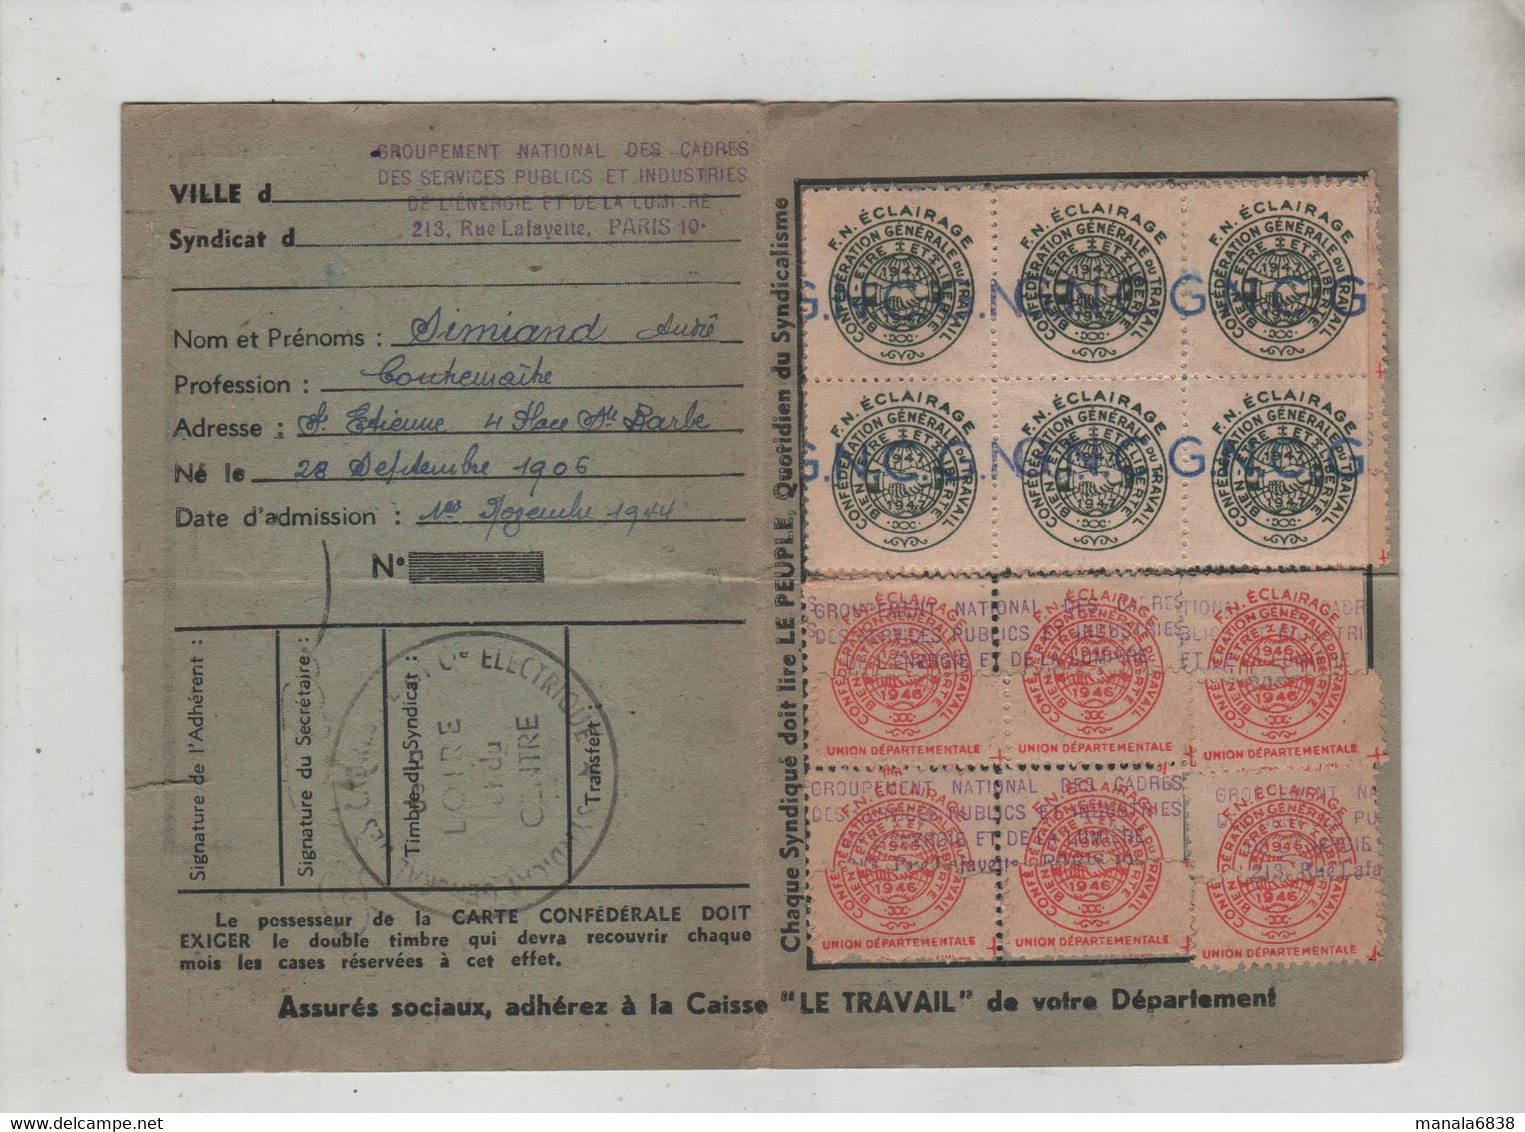 Carte Confédérale 1946 CGT Simiand Saint Etienne - Lidmaatschapskaarten